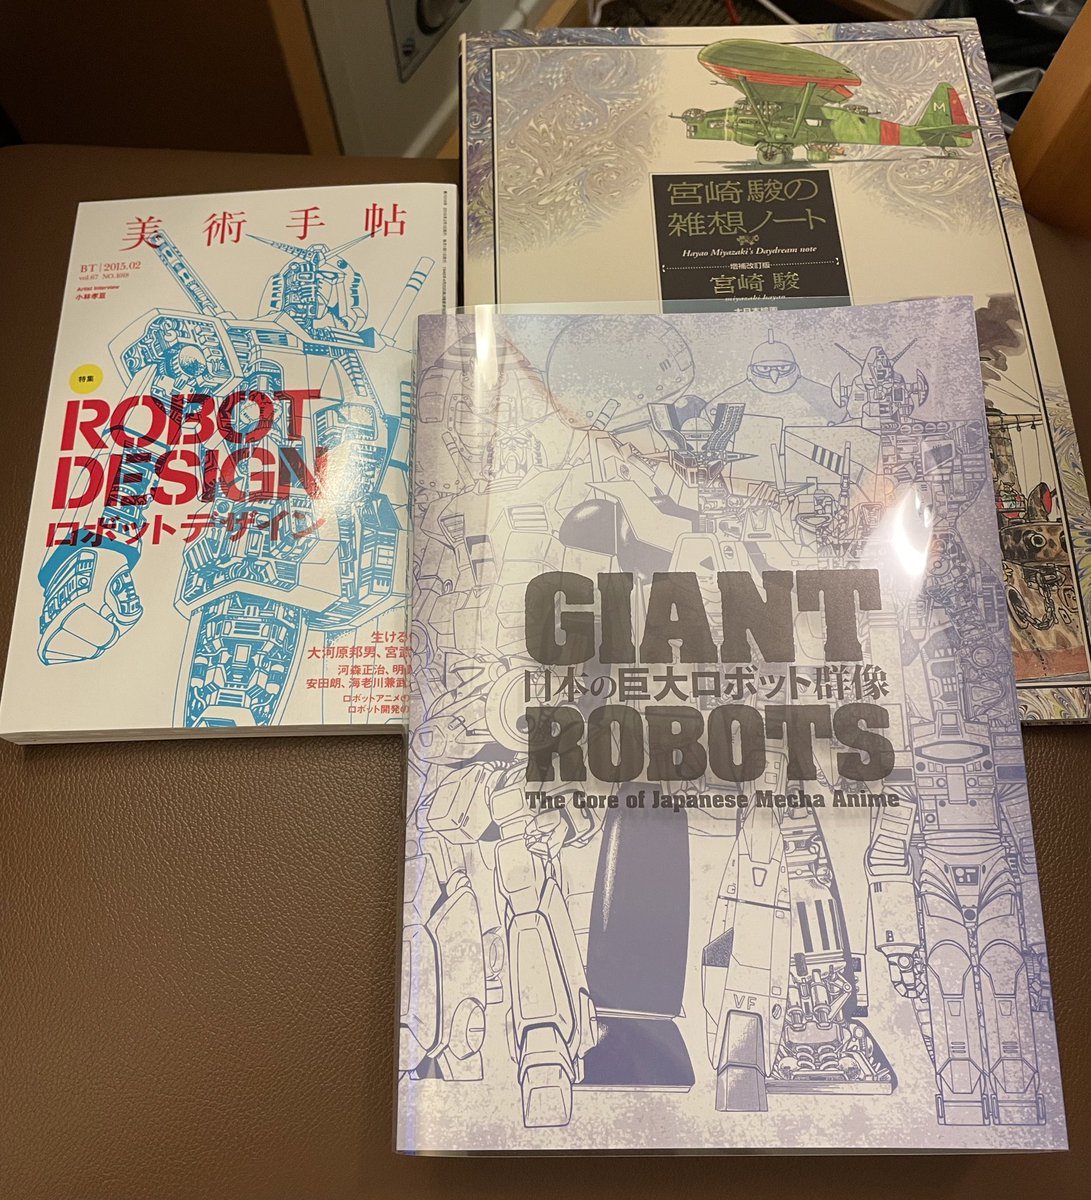 横須賀美術館「日本のロボットアニメ群像」「鈴木敏夫とジブリ展」へいてきた。
横須賀遠い…